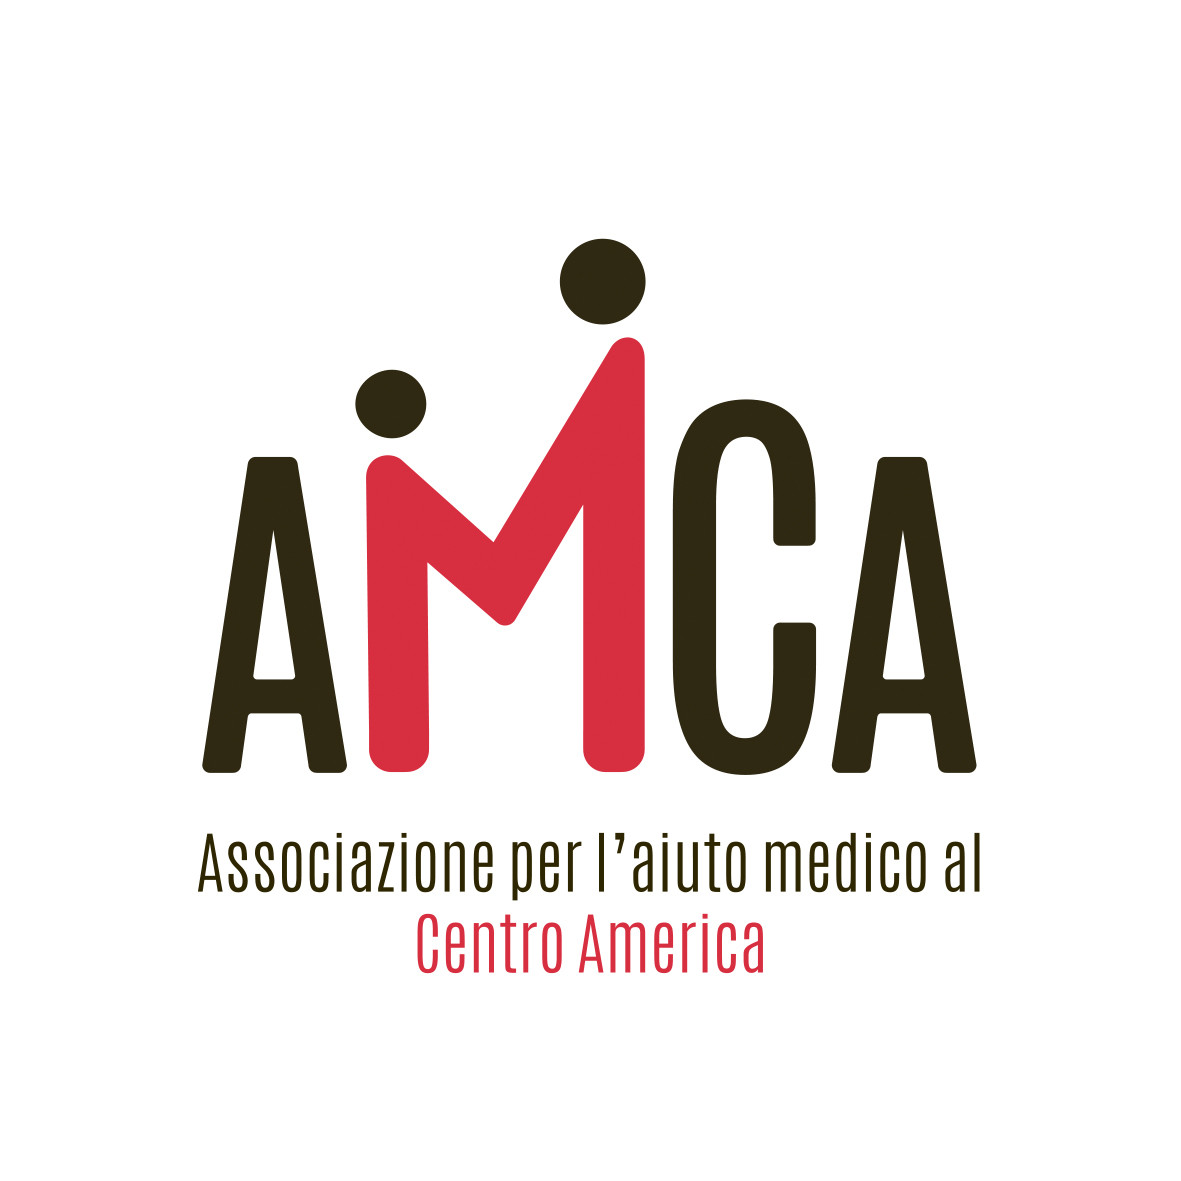 AMCA Associazione per l'aiuto medico al Centro America